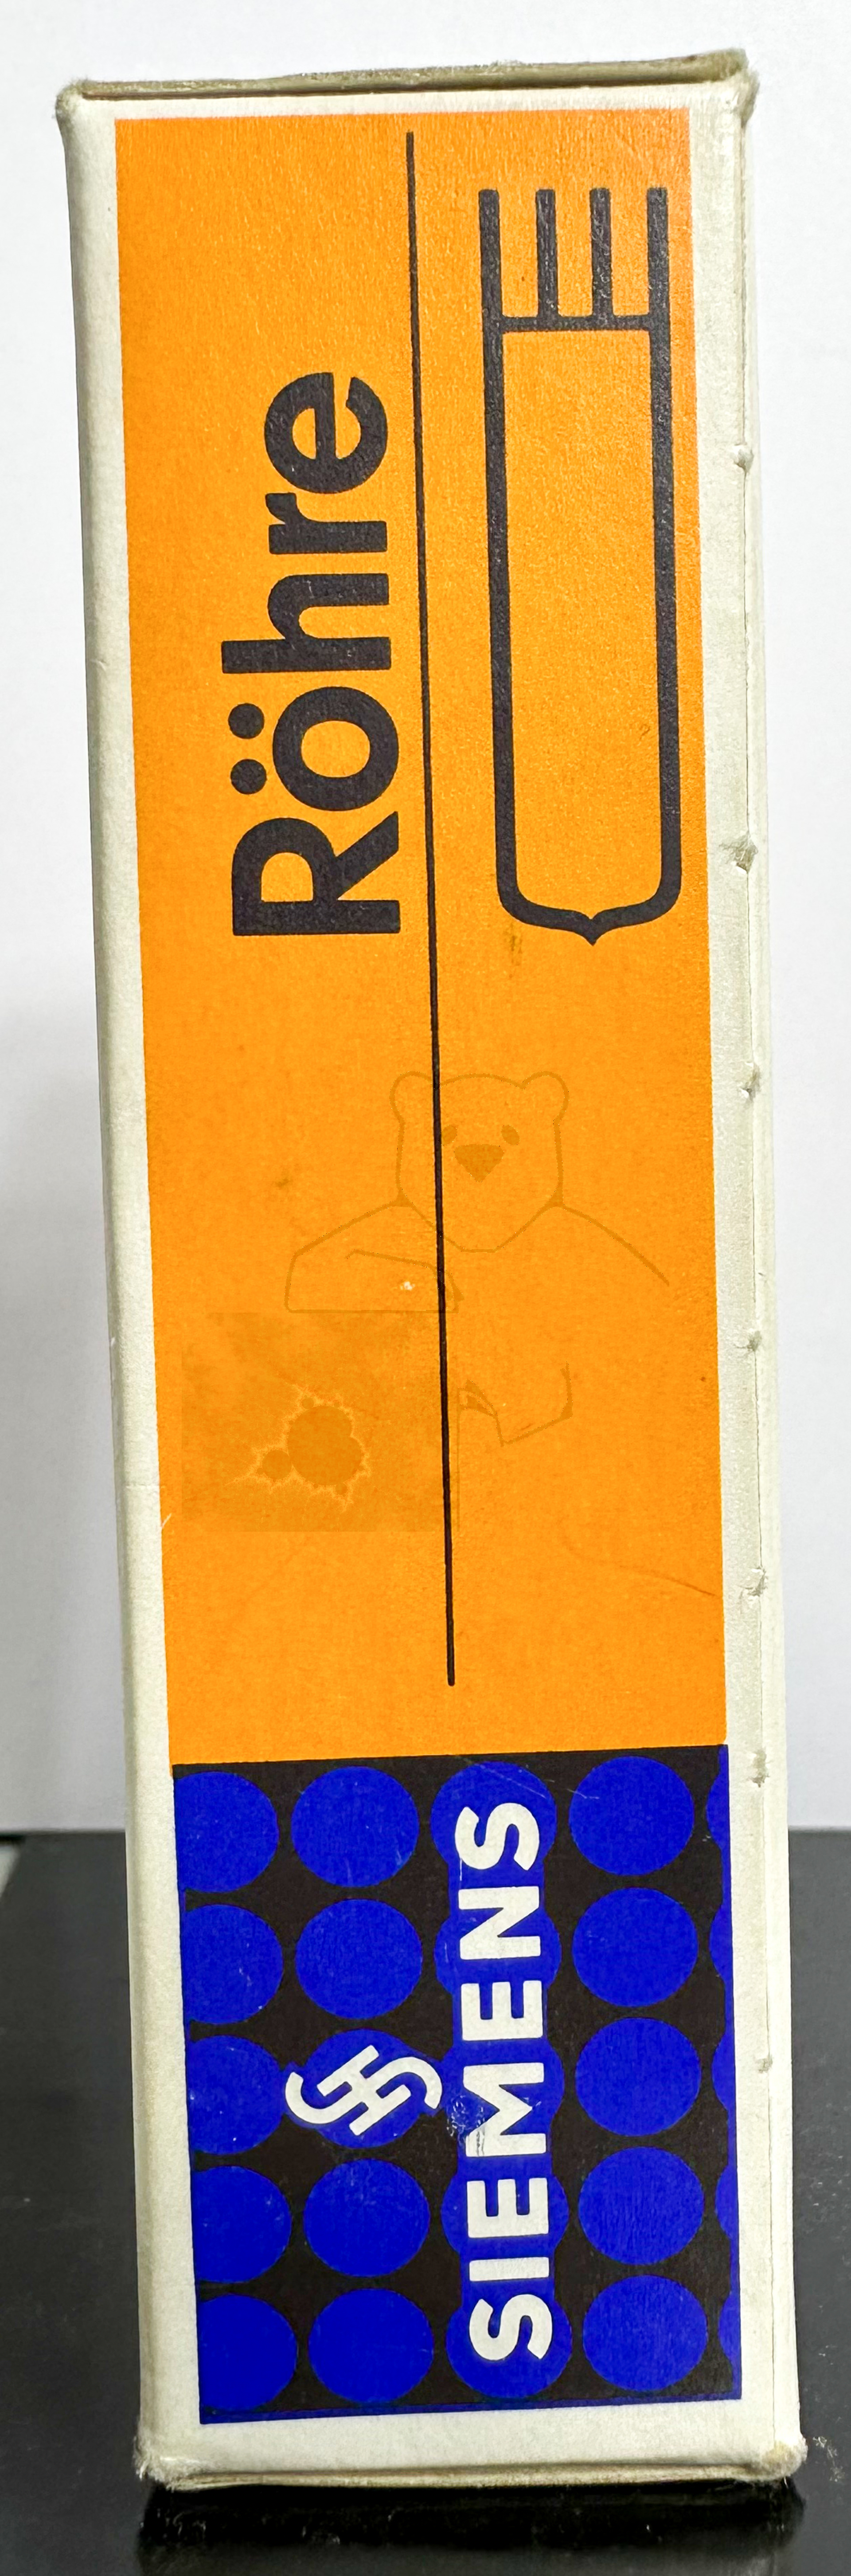 Röhre ECC8100 #1956 Verpackung Bild 2